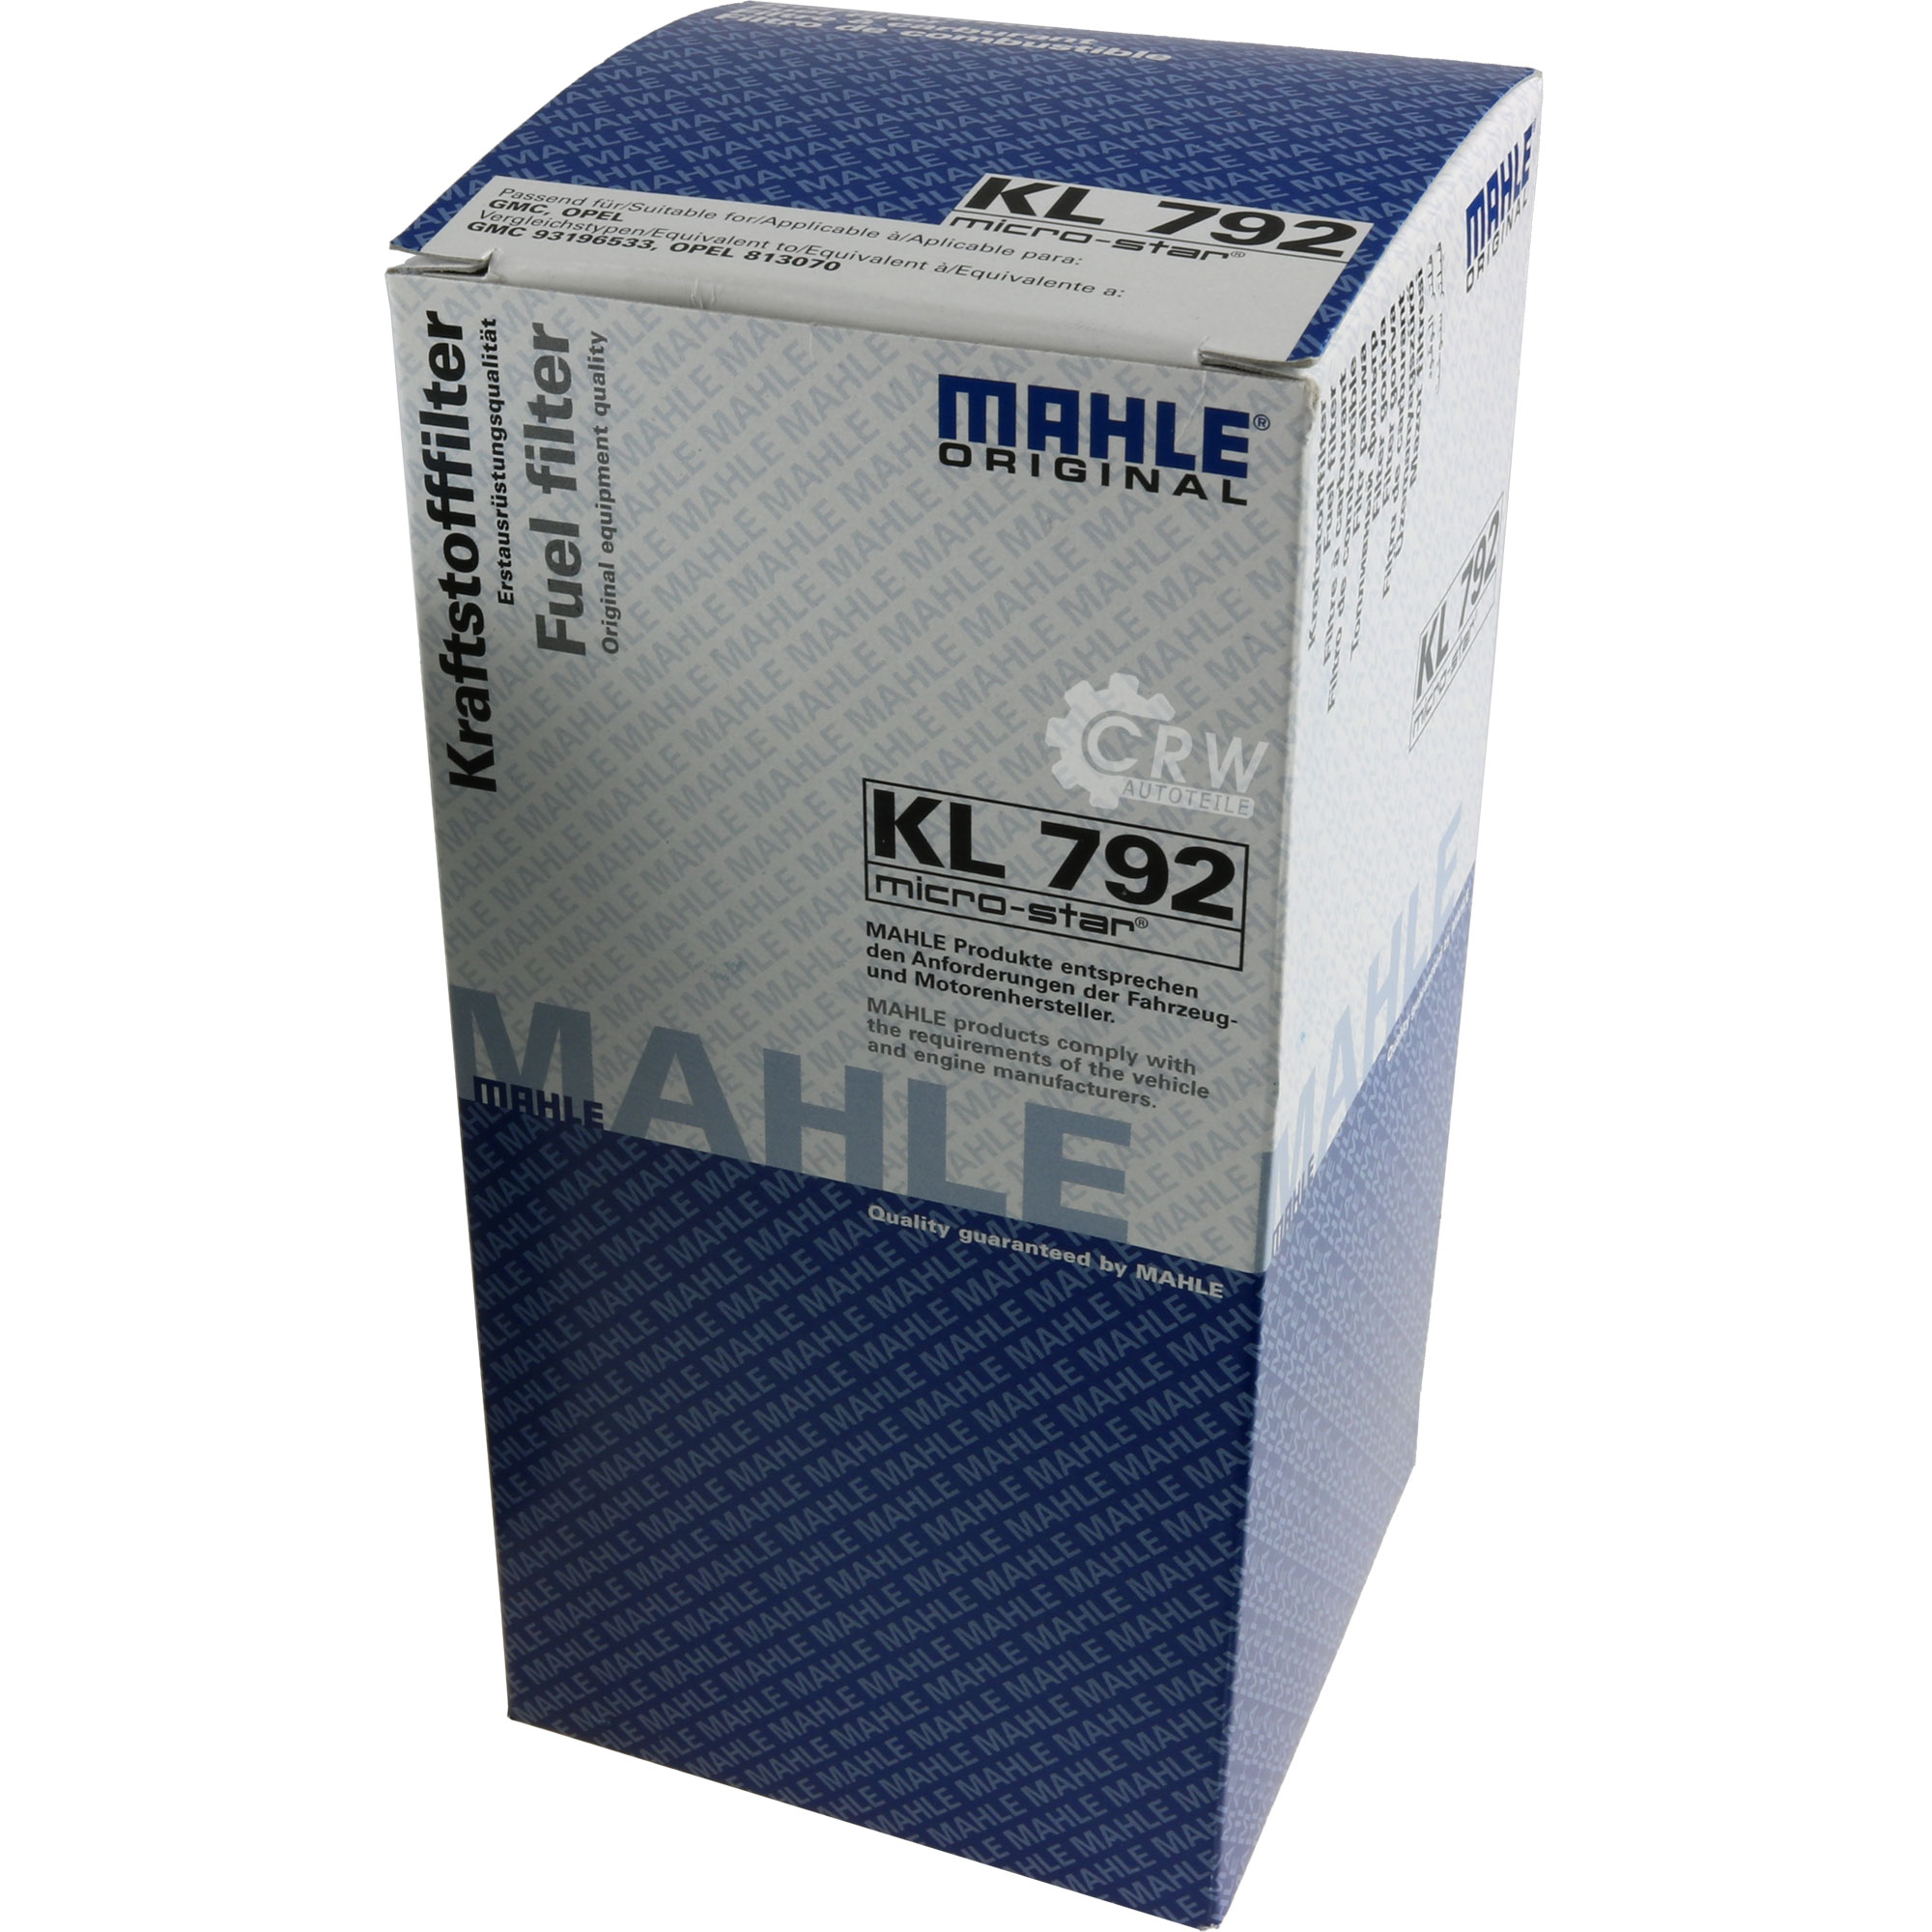 MAHLE Kraftstofffilter KL 792 Fuel Filter